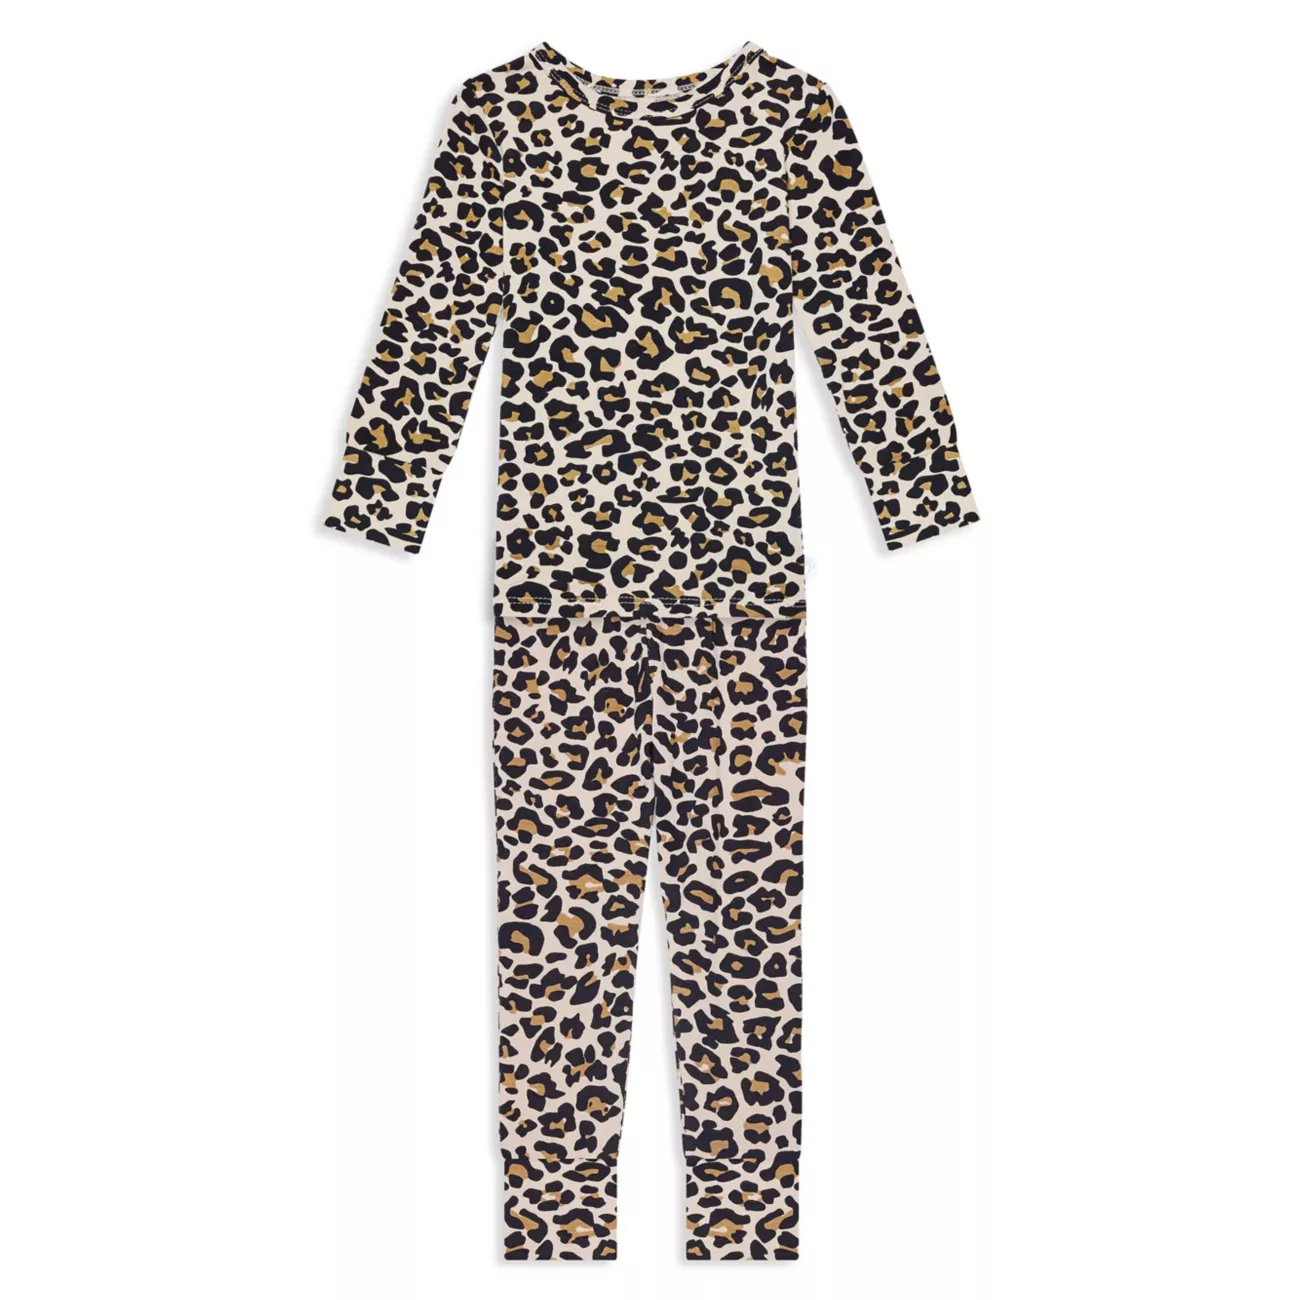 Baby's, Little Girl's & amp; Двухкомпонентный пижамный комплект с леопардовым принтом для девочек Lana Posh Peanut